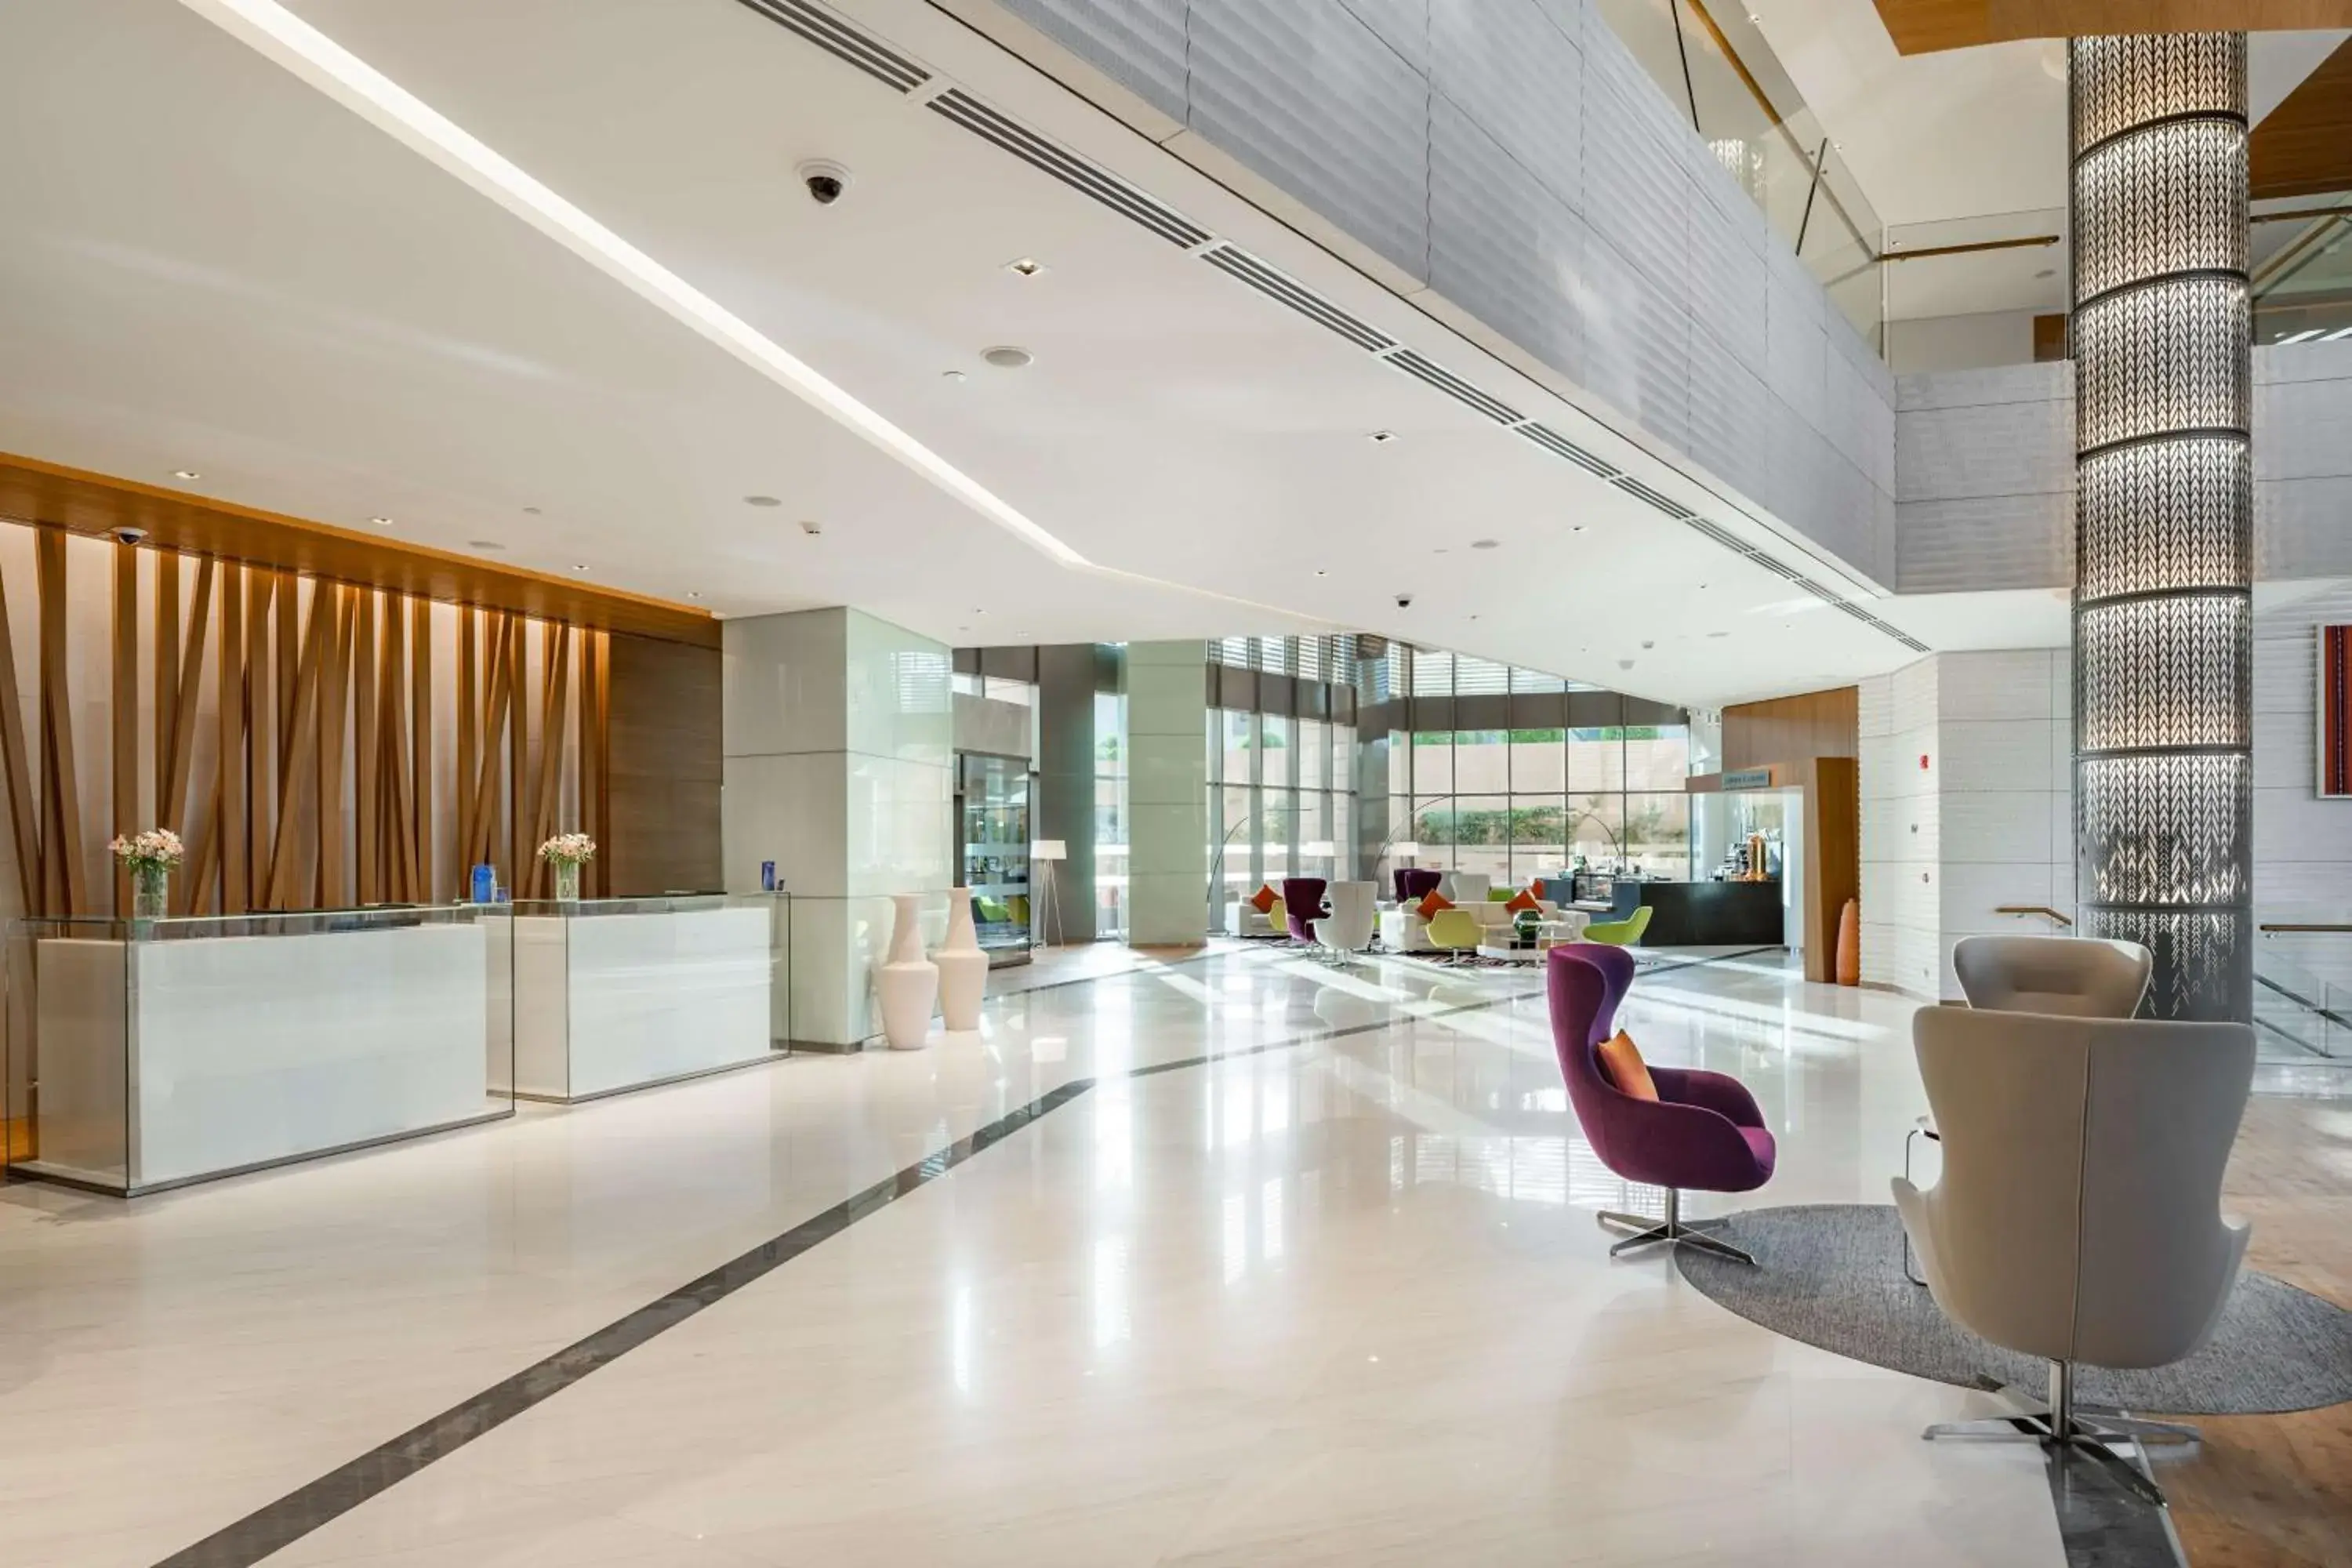 Lobby or reception in Radisson Blu Hotel & Residence, Riyadh Diplomatic Quarter